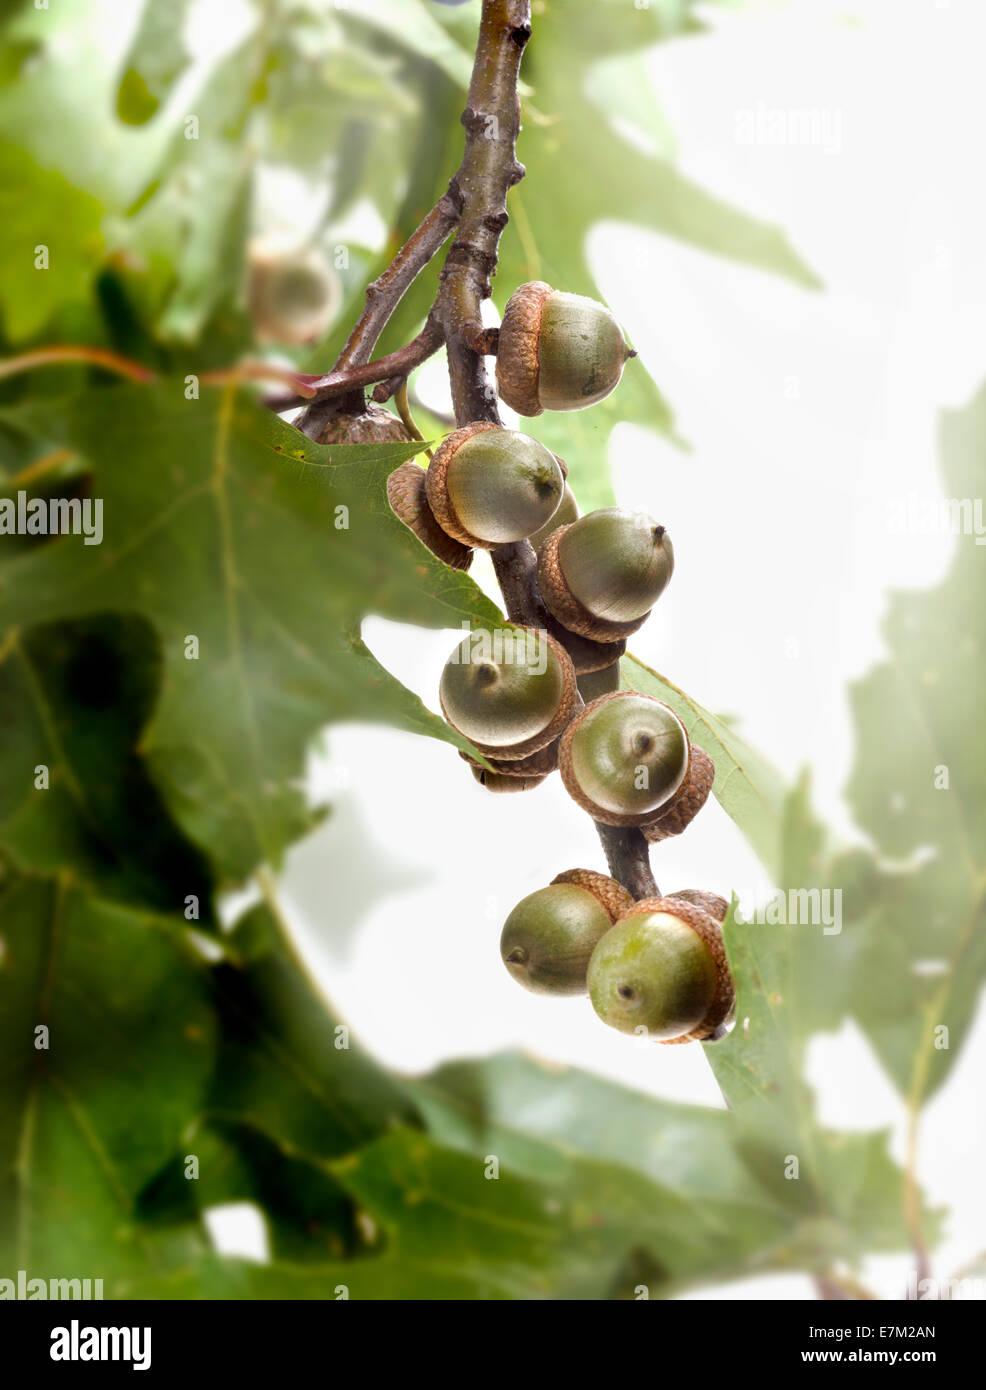 Gruppi di Acorn dadi sul ramo con foglie e chiave di alta luce in background. Verticale fotografia a colori Foto Stock